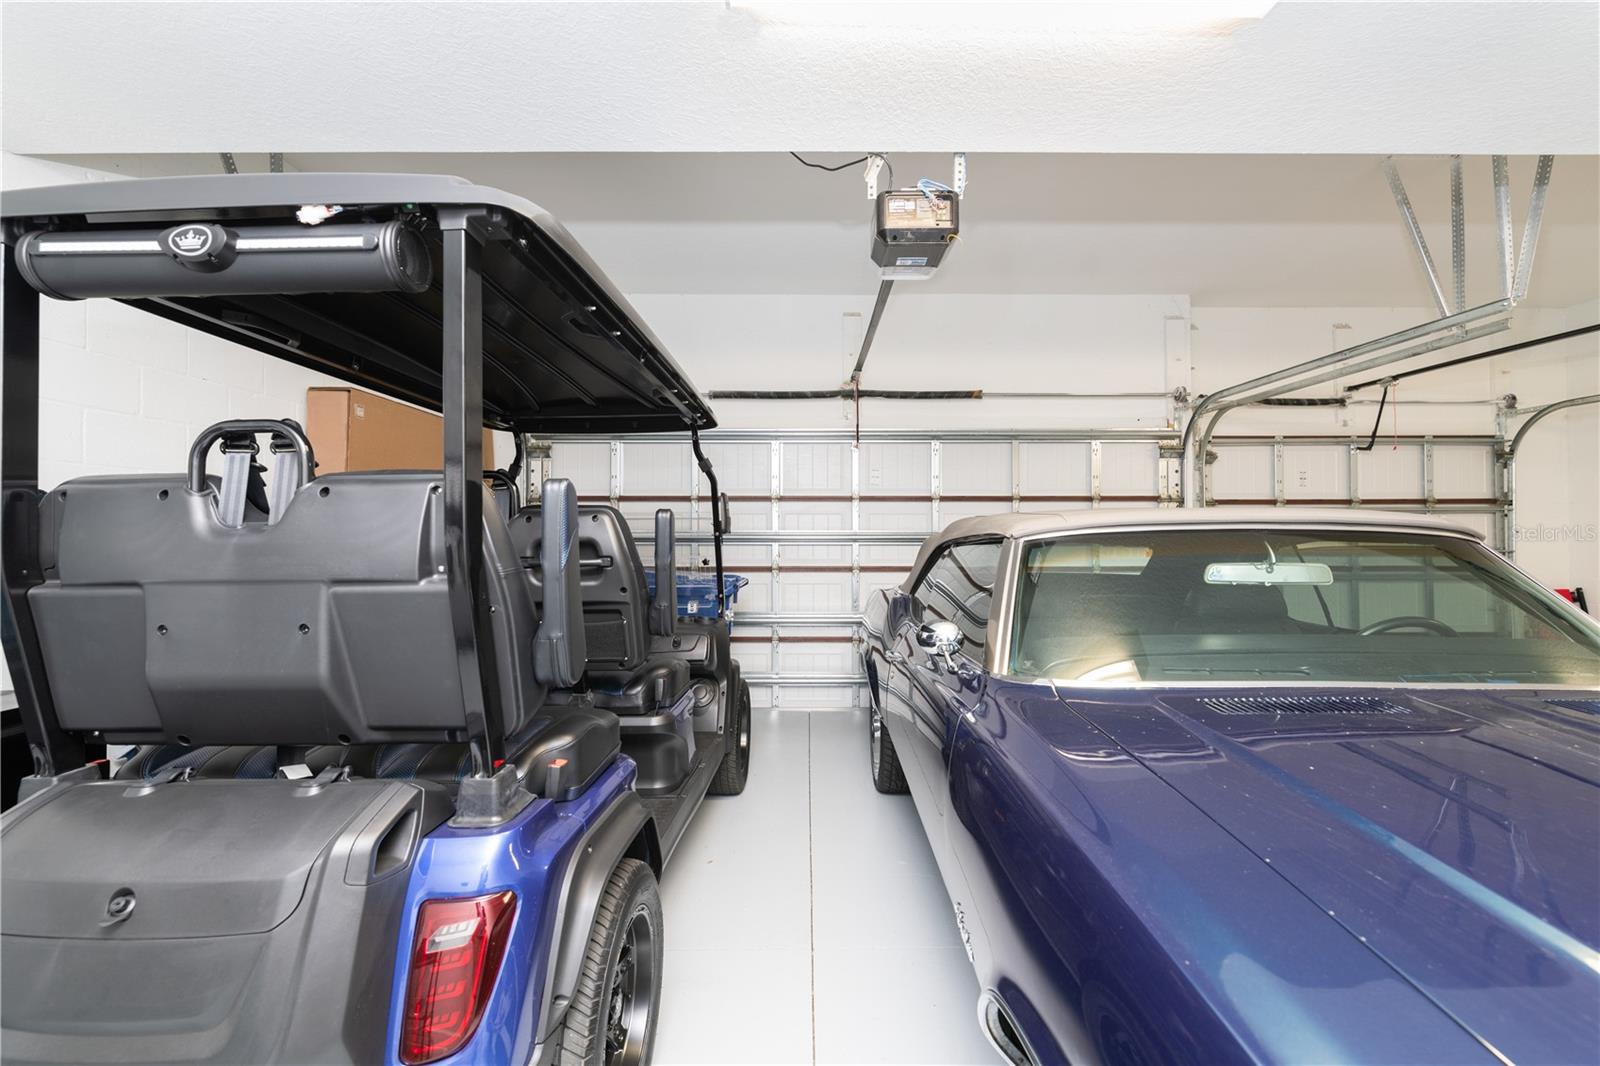 Three car garage